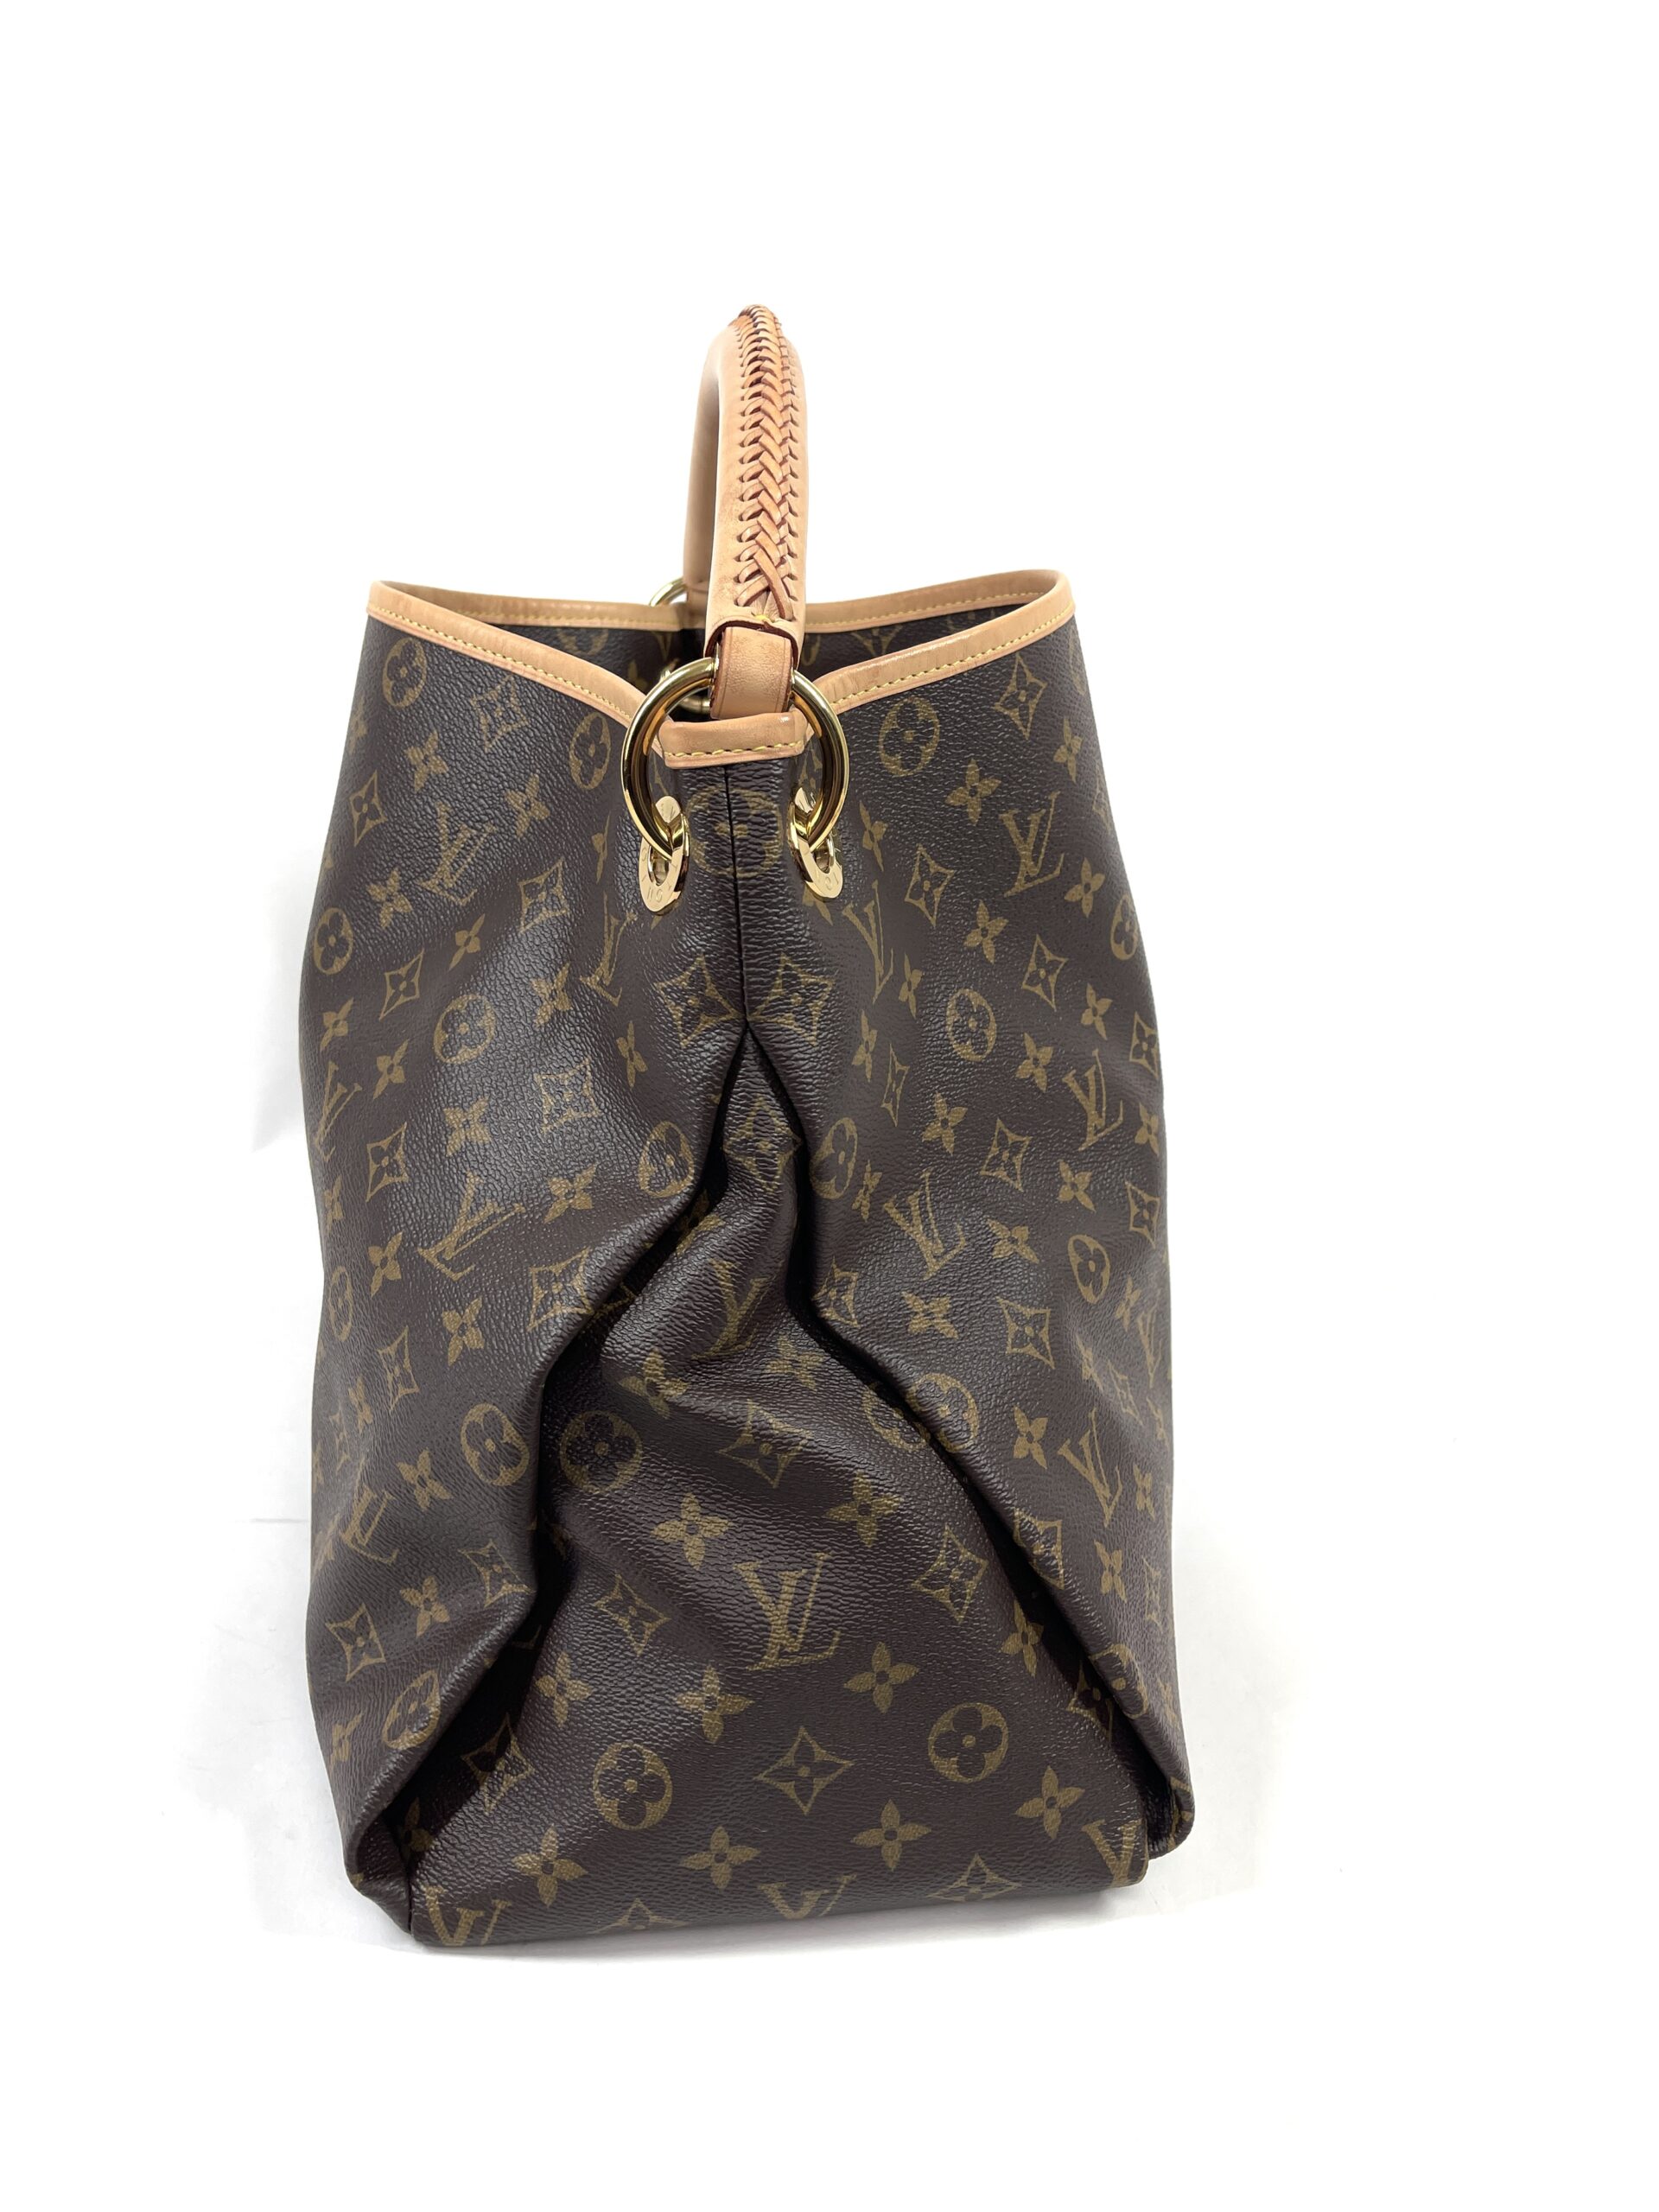 ❤️Louis Vuitton Monogram Artsy MM ❤️ 100% Auth LV Hobo Handbag Purse w/Dust  Bag